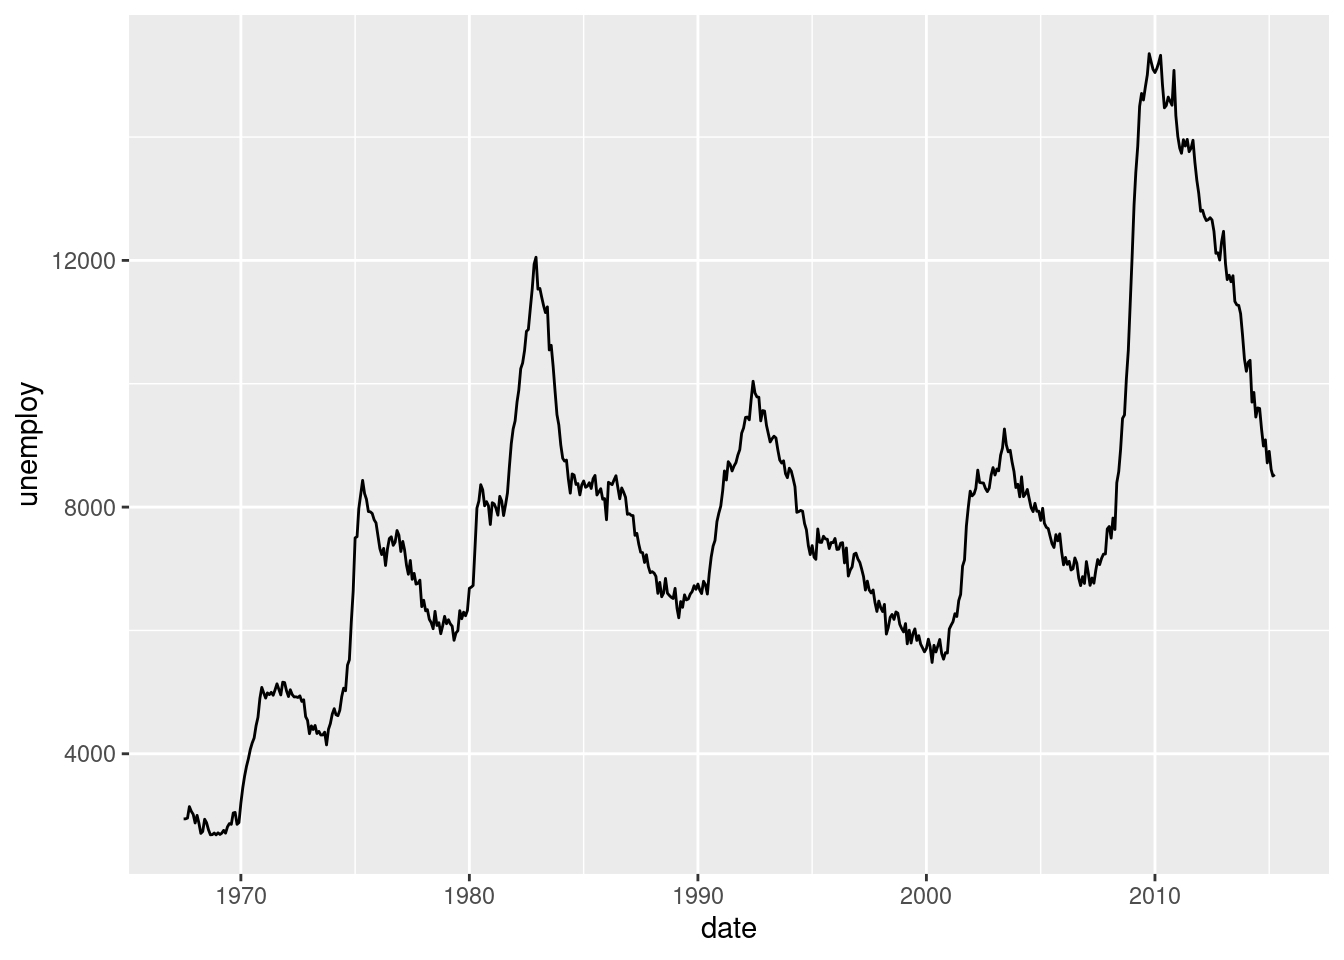 Gráfico de linhas com tendência temporal para Número de desemprego. As linhas são ótimas para mostrar as tendências temporais, inclusive as variações sazonais.